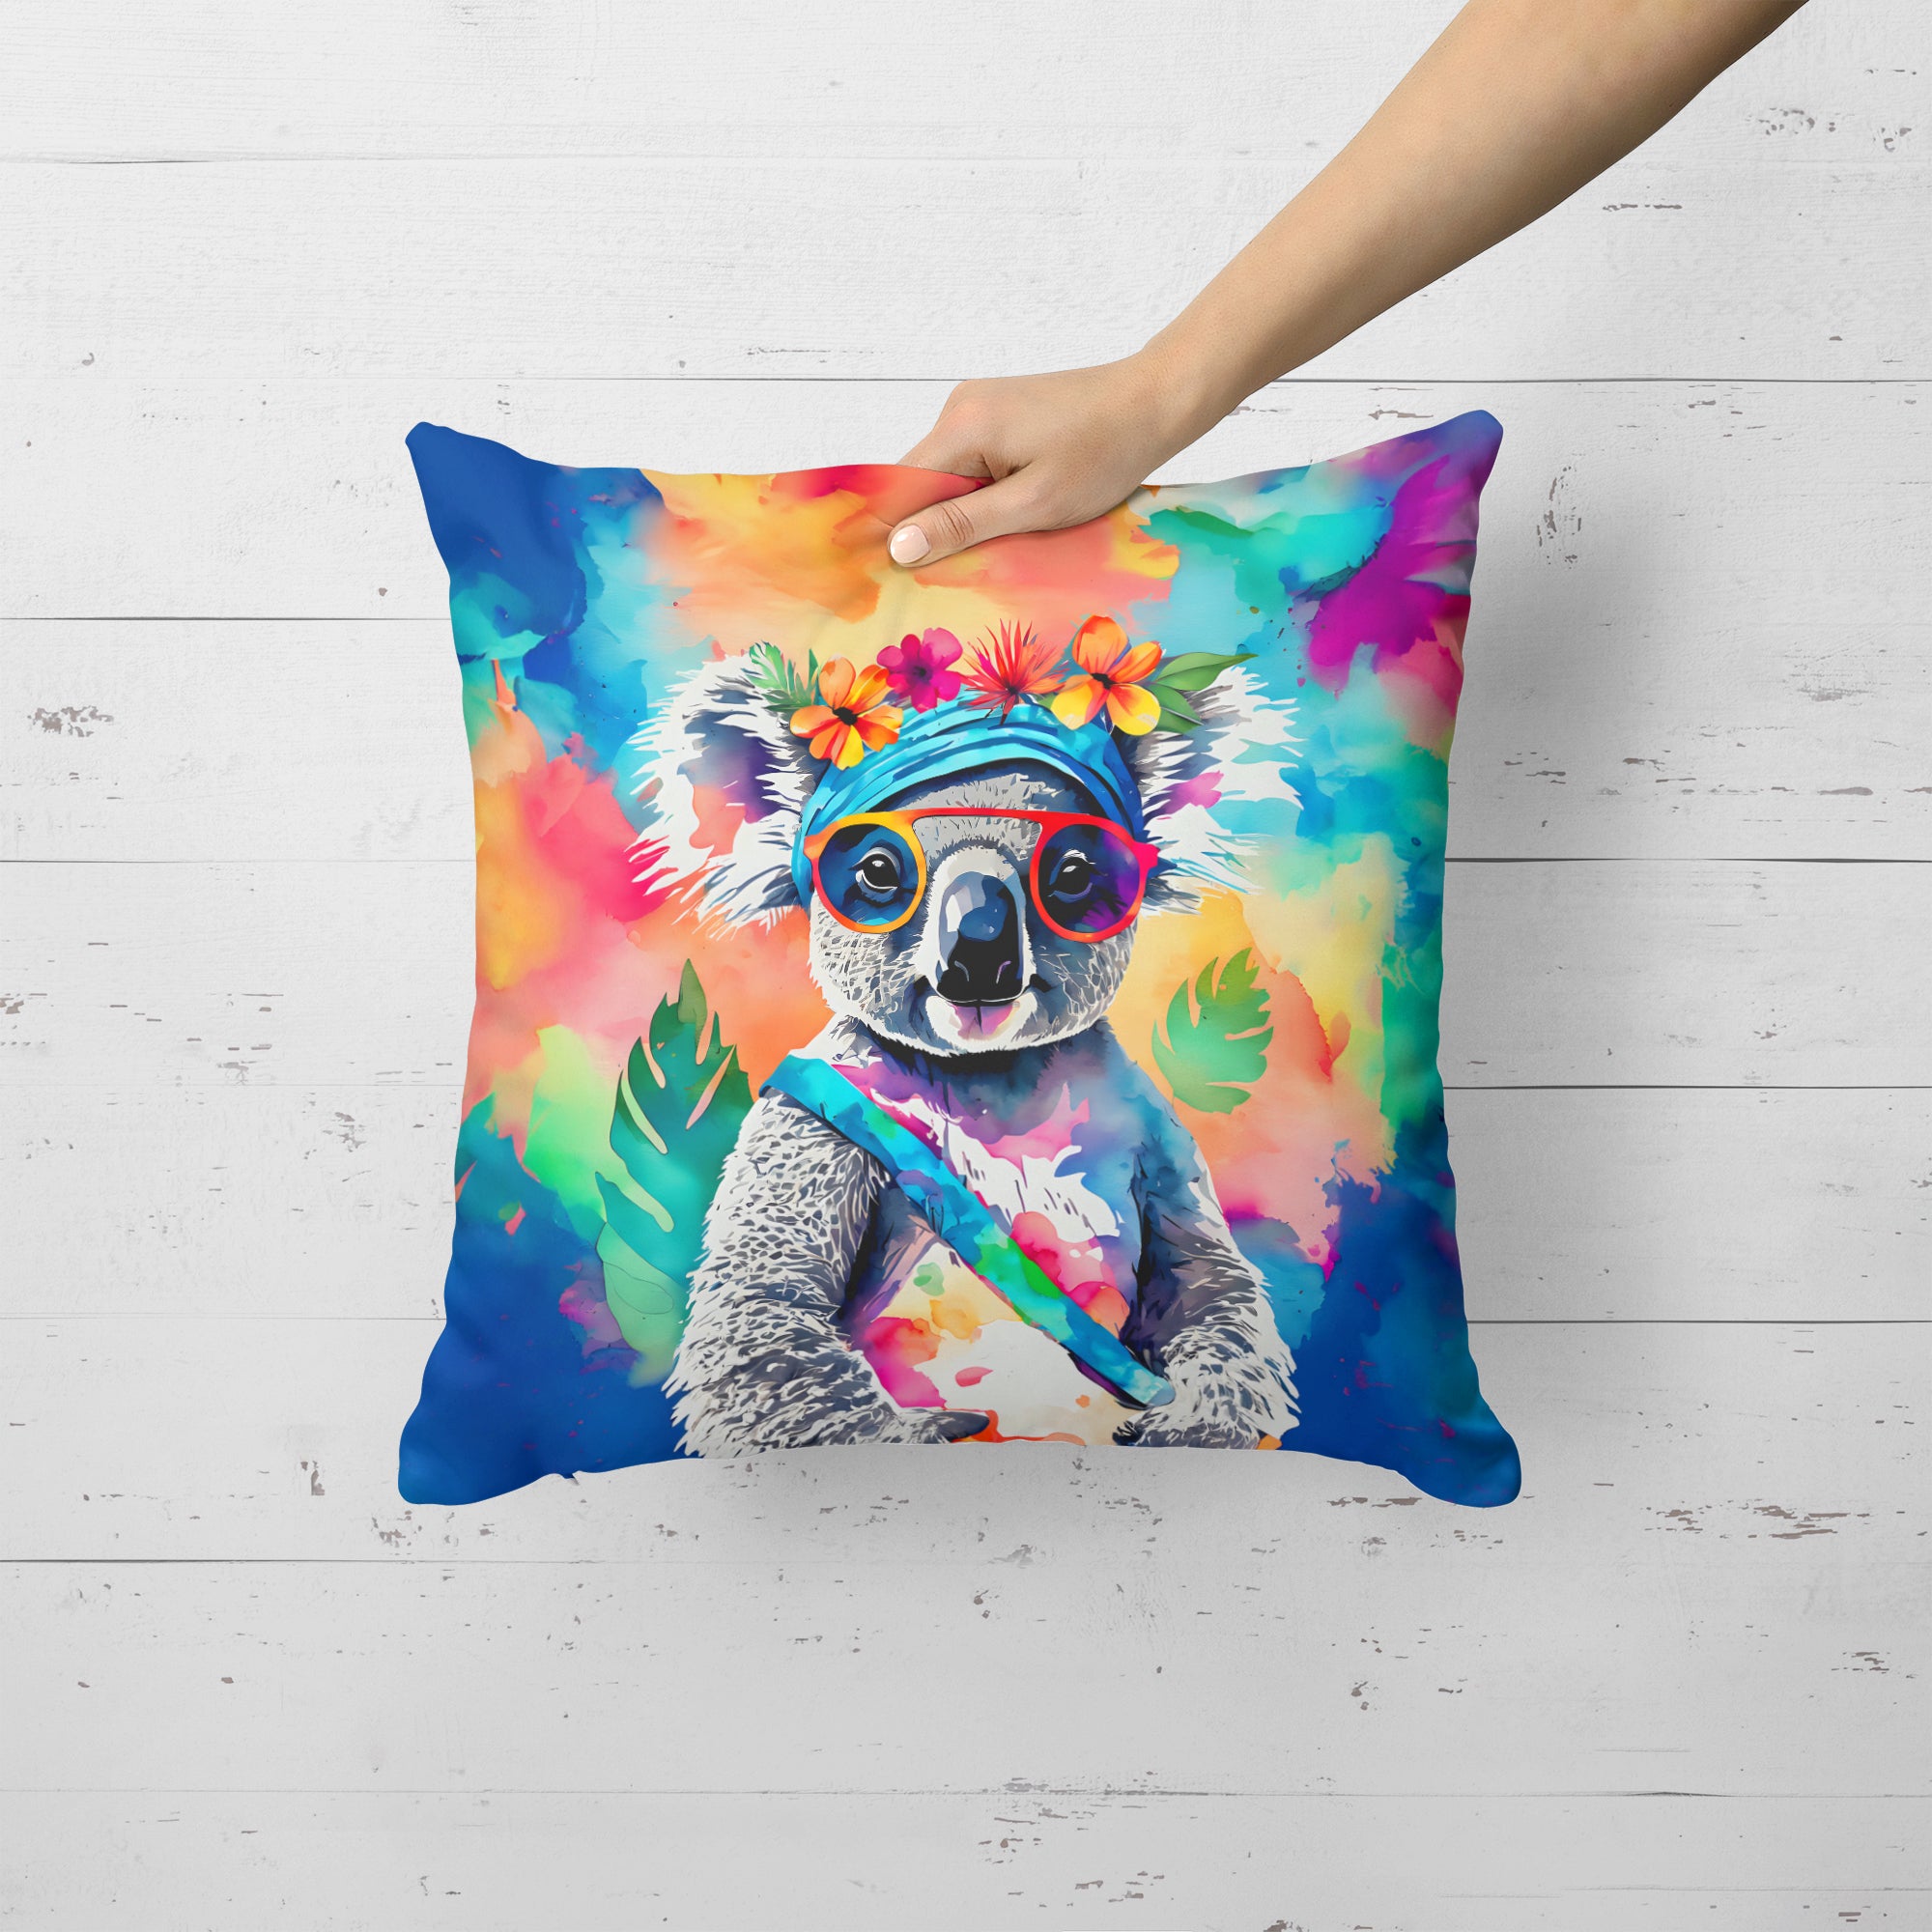 Buy this Hippie Animal Koala Throw Pillow